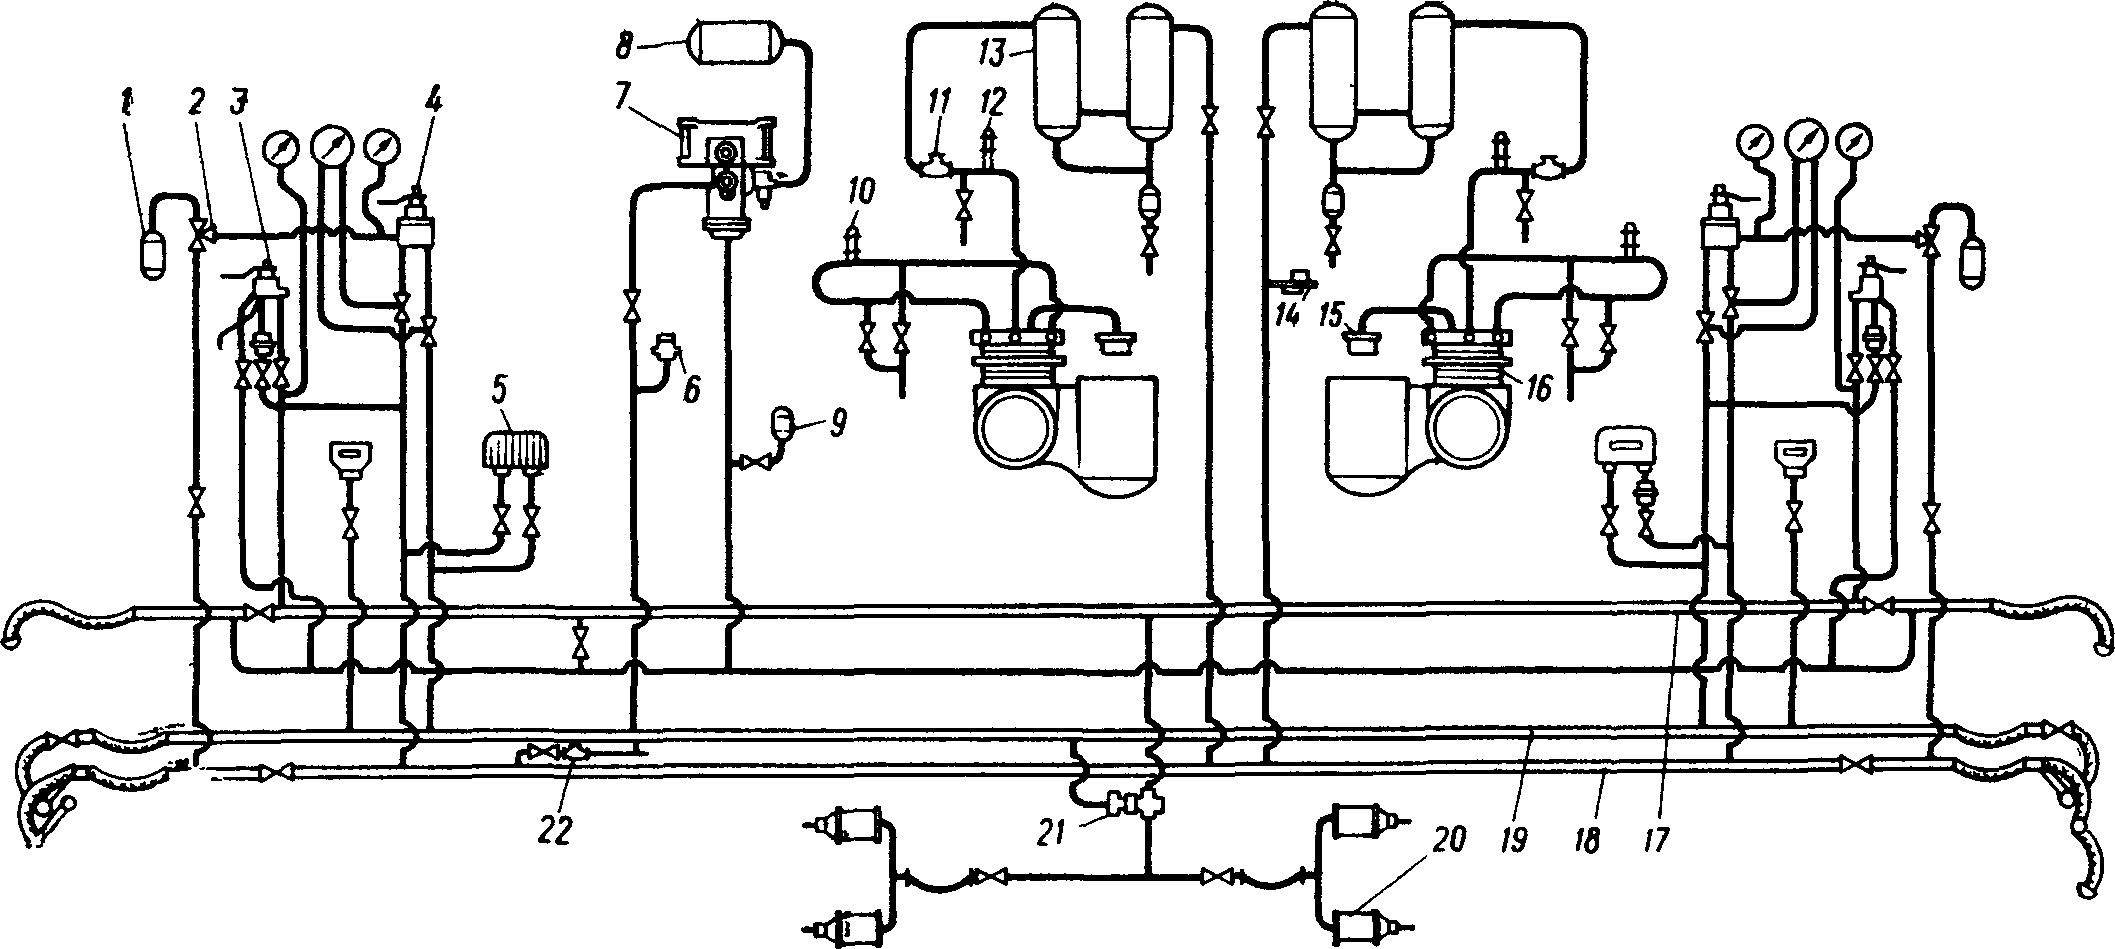 Схема тормозного оборудования электровоза ВЛ22М